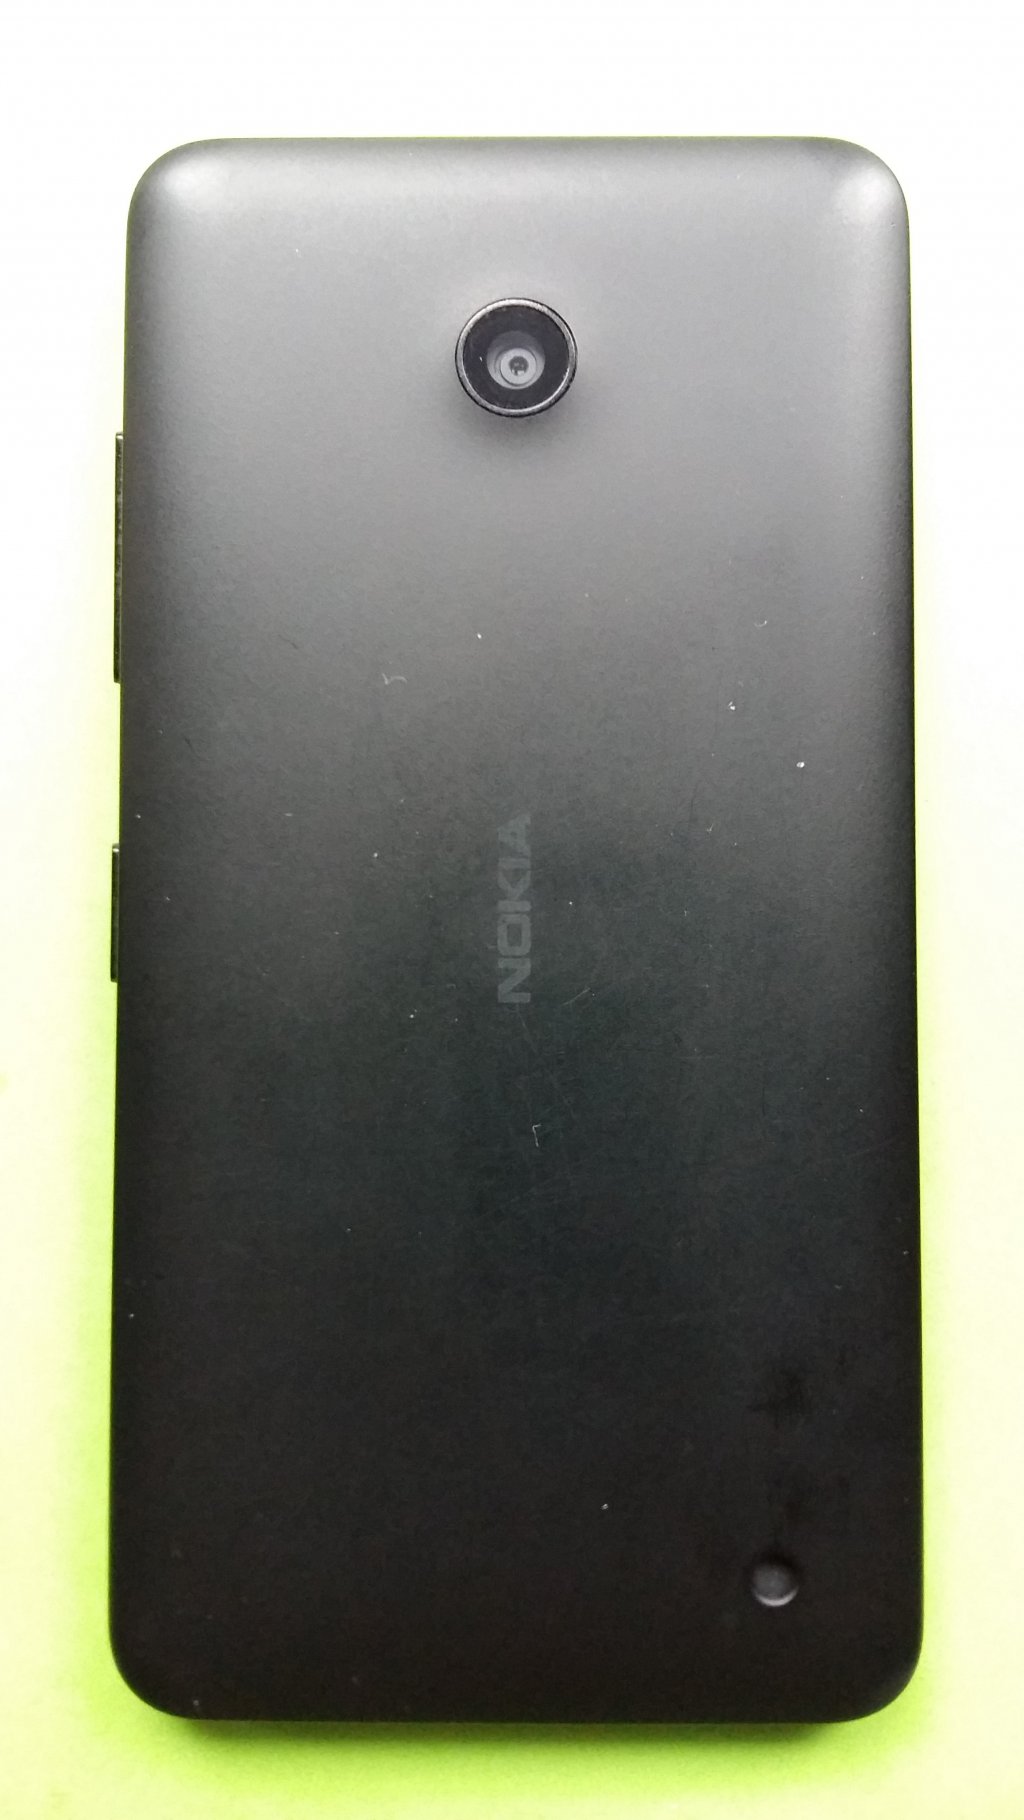 image-7926252-Nokia_635_Lumia_(1)2.w640.jpg